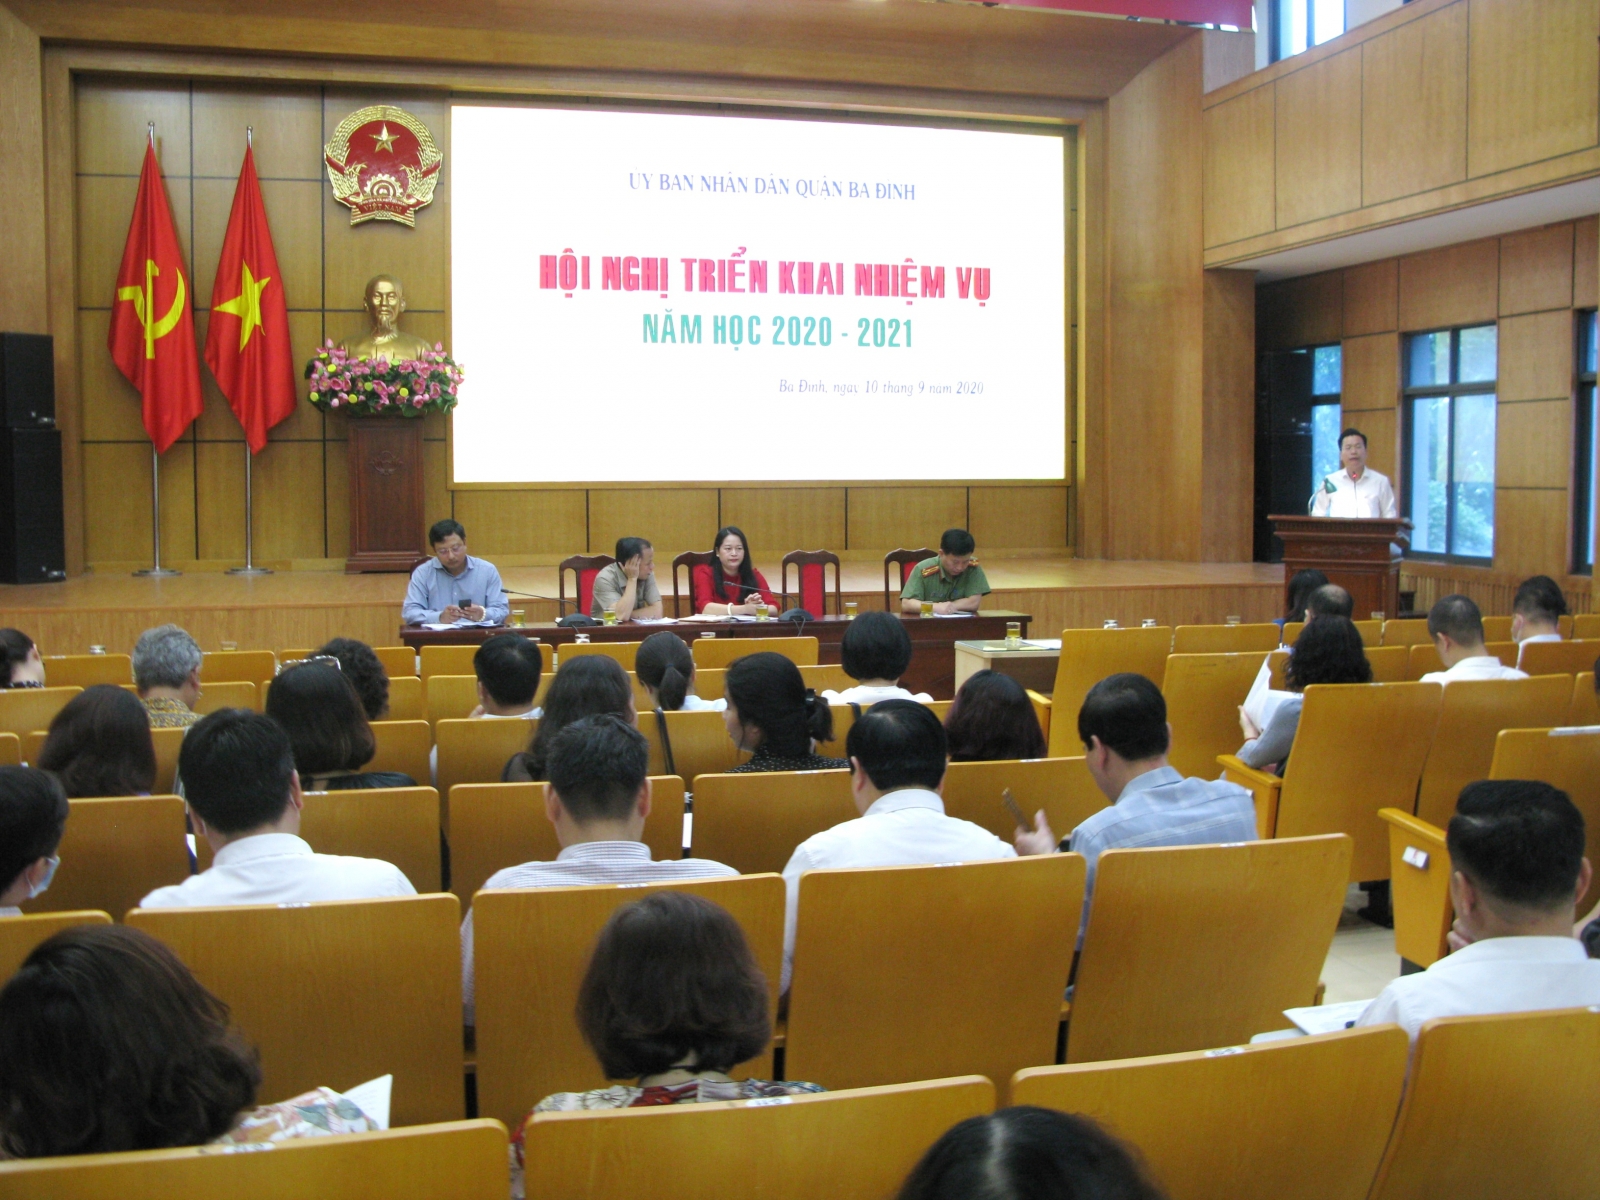 Hà Nội: Giáo dục Ba Đình triển khai nhiệm vụ “kép” năm học 2020 -2021